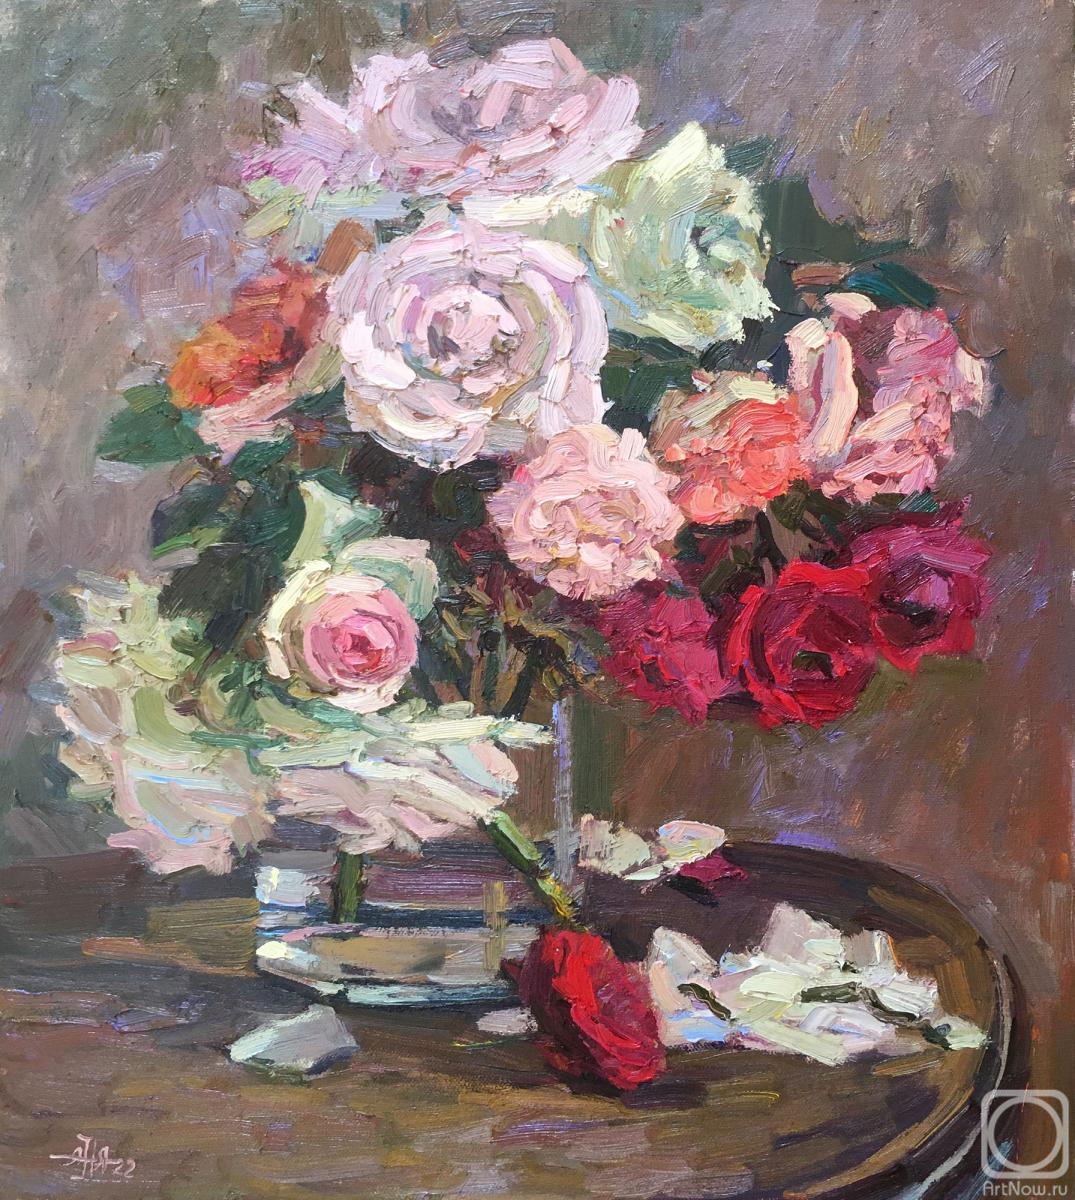 Norloguyanova Arina. Roses or a Pink Poem